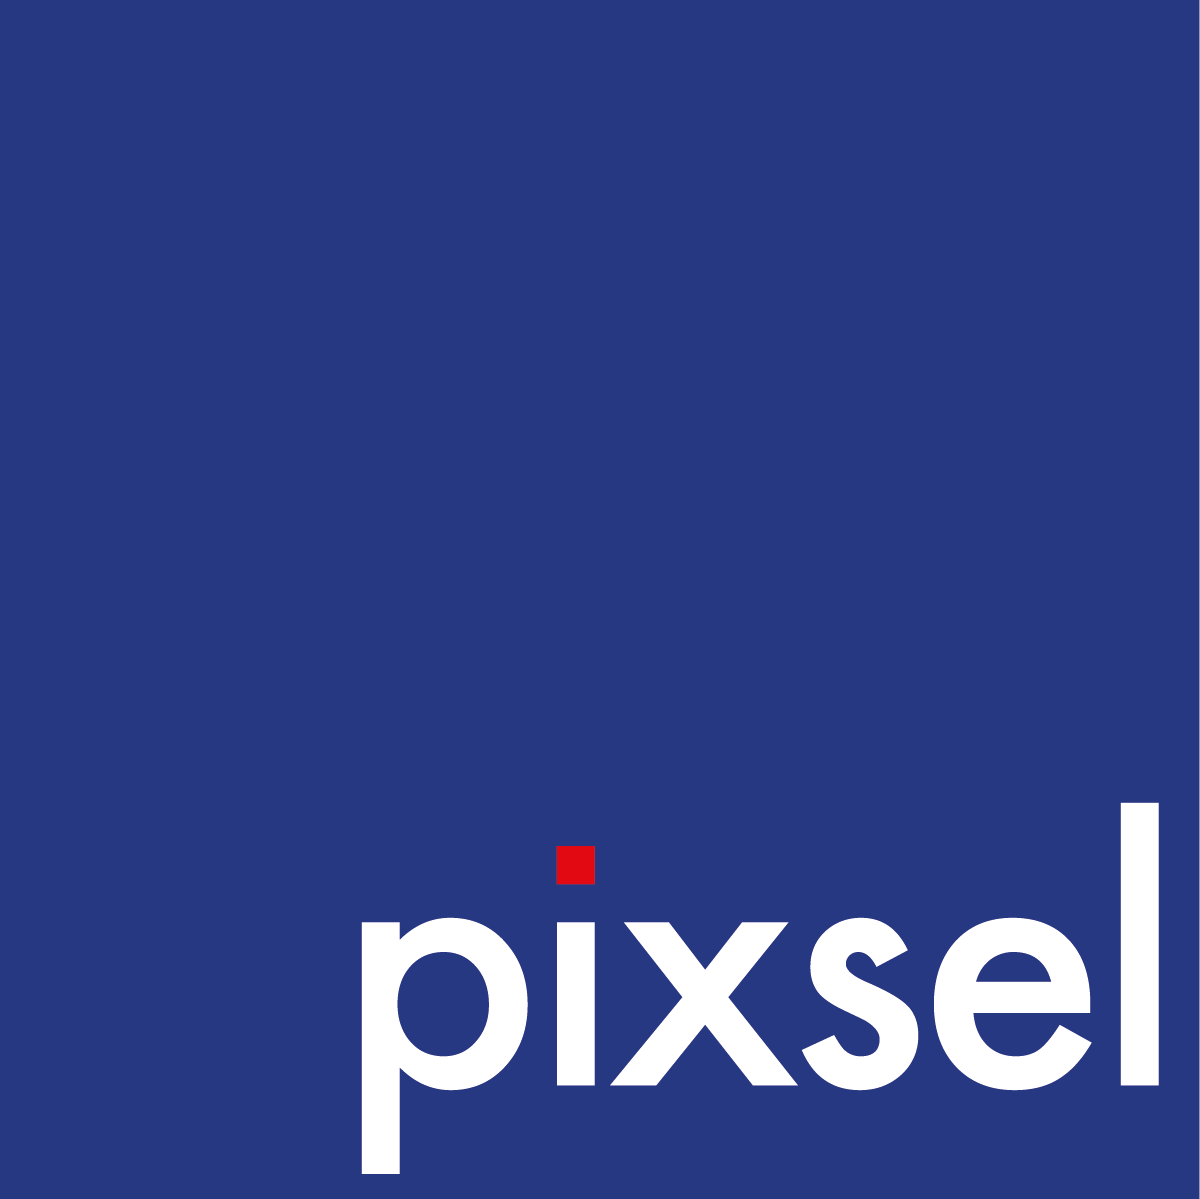 Pixsel Studios